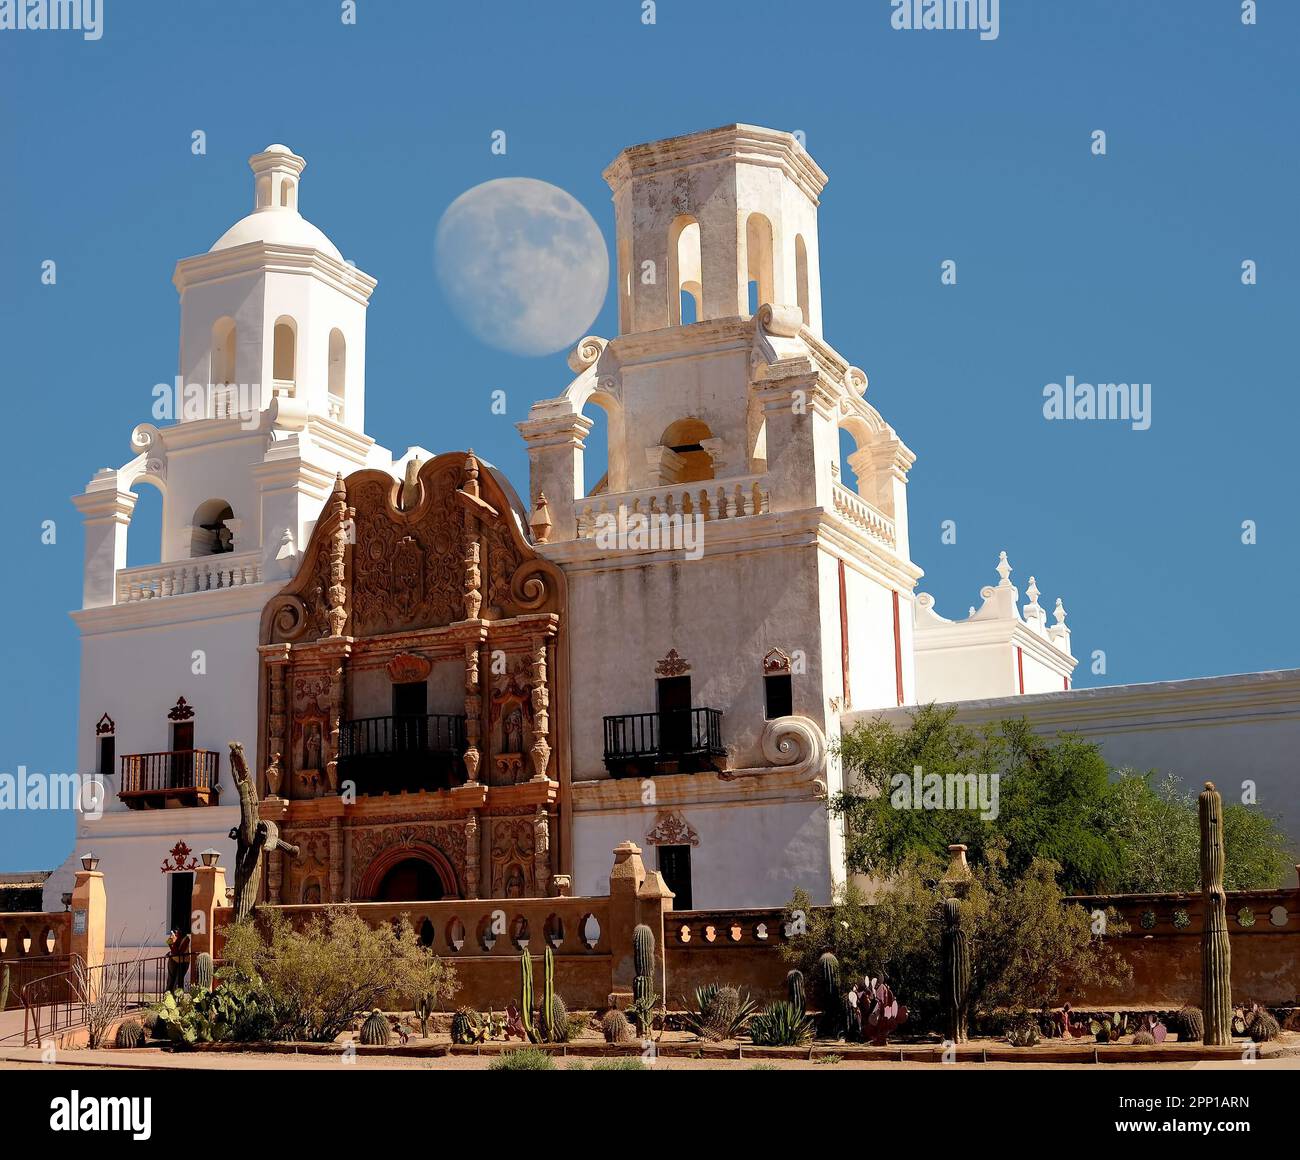 Missione spagnola San Xavier moon rise iniziata nel 1692 dai missionari spagnoli nelle Americhe Foto Stock